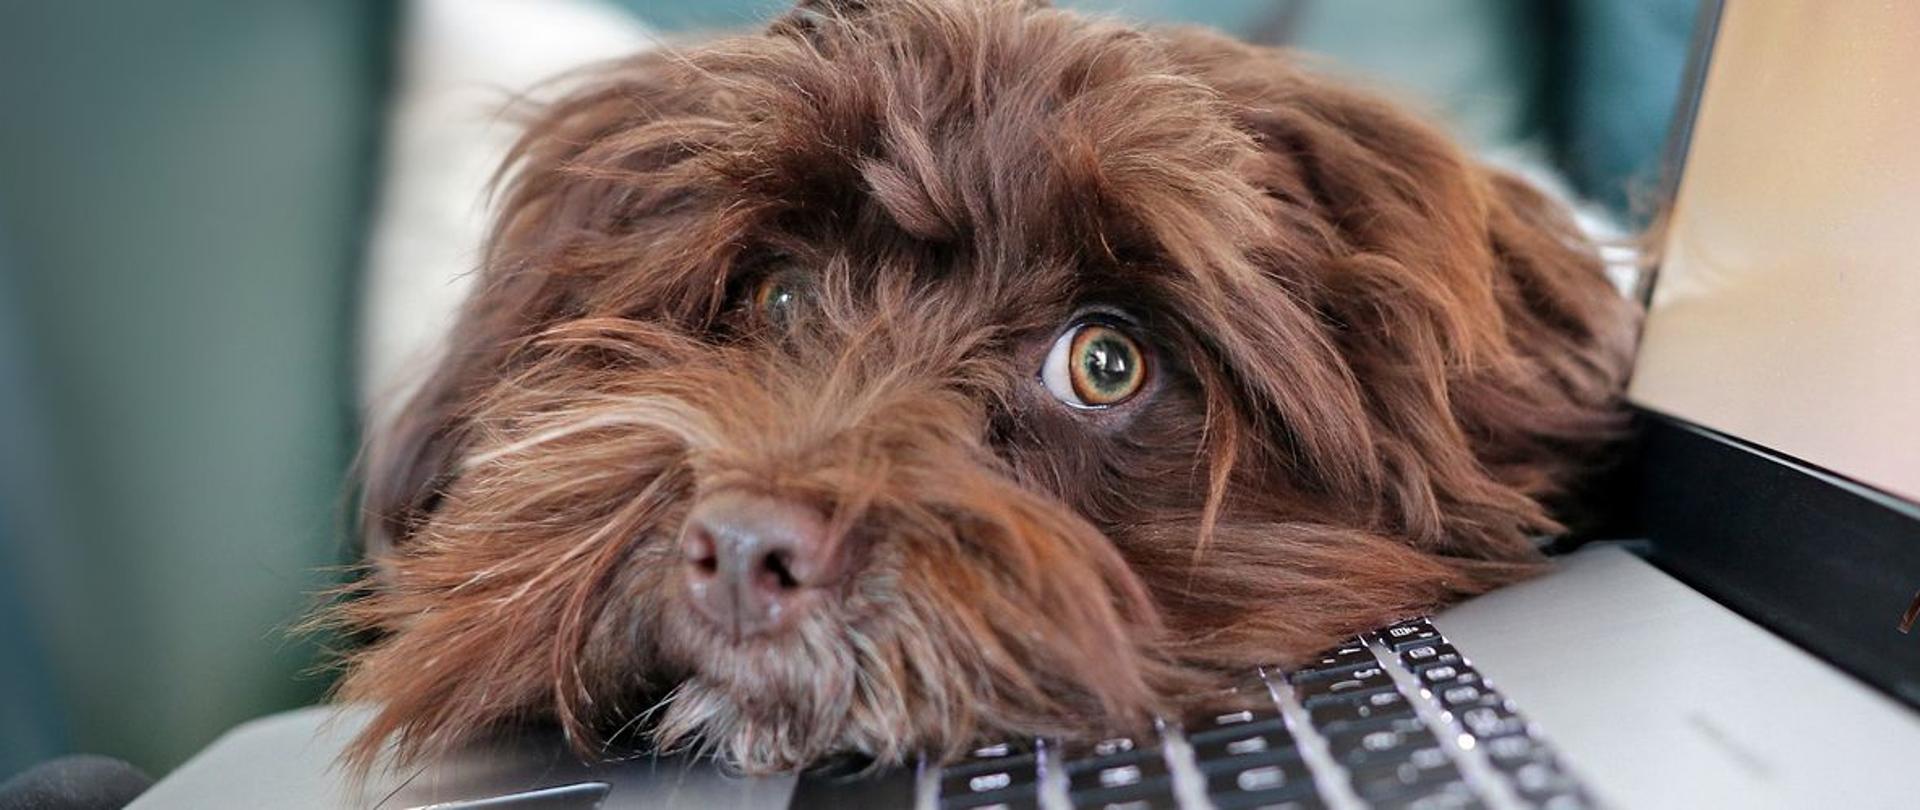 Długowłosy pies o umaszczeniu brązowym opiera głowę o klawiaturę otwartego laptopa.